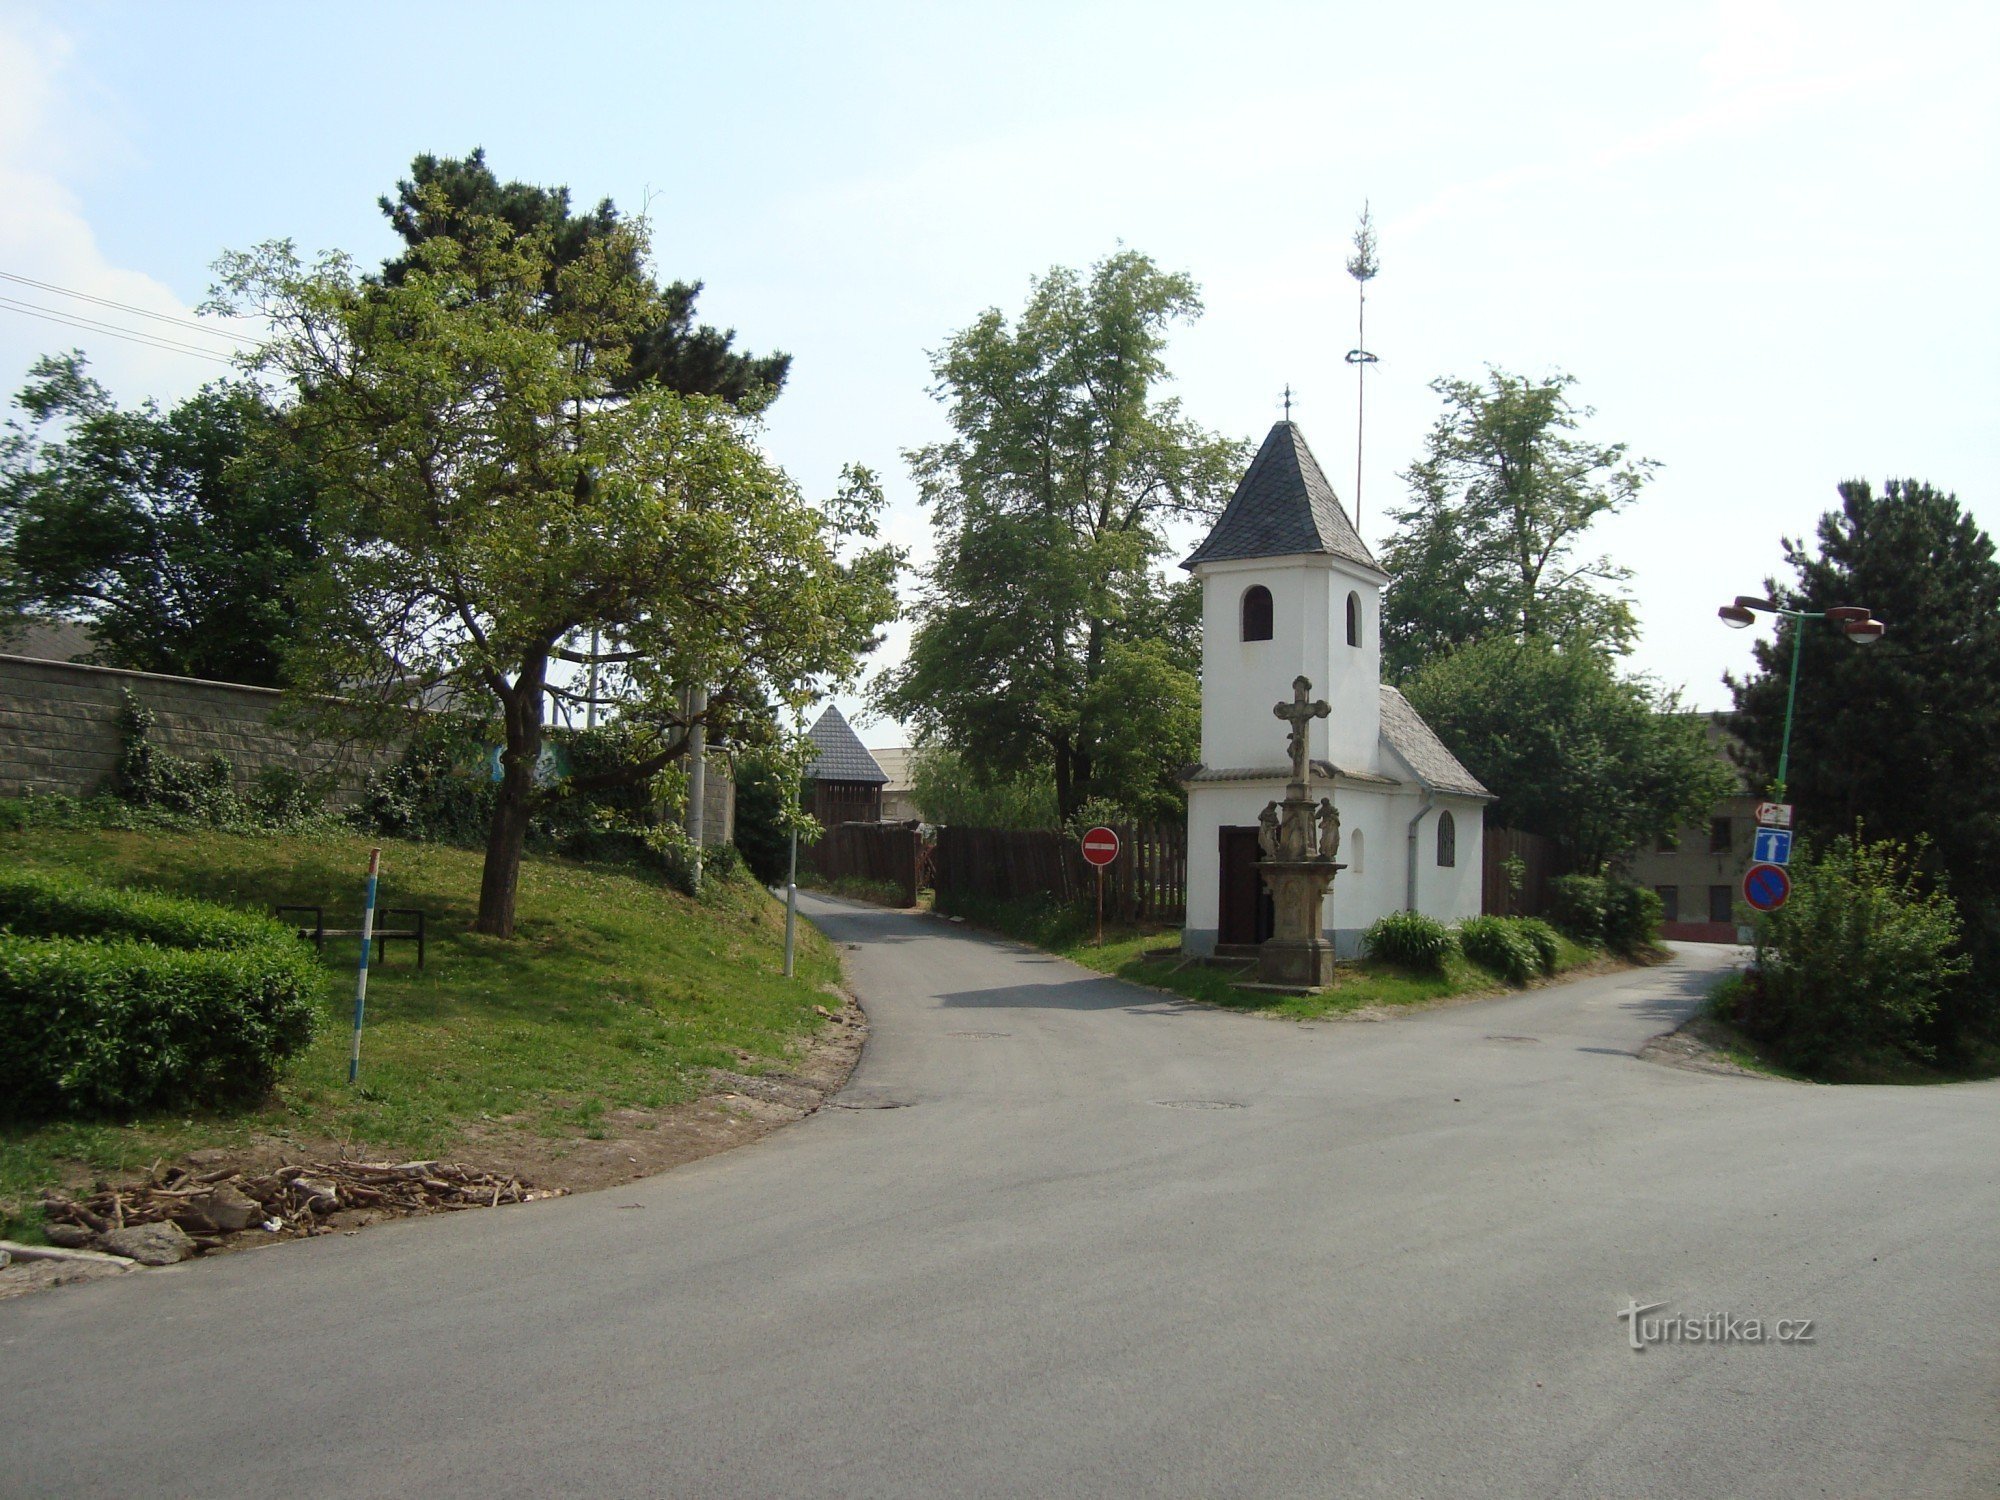 Topole - bliźniak przy ulicy Nedbalova - kaplica św. Floriana z 1739 r. i krzyż z 1861 r.